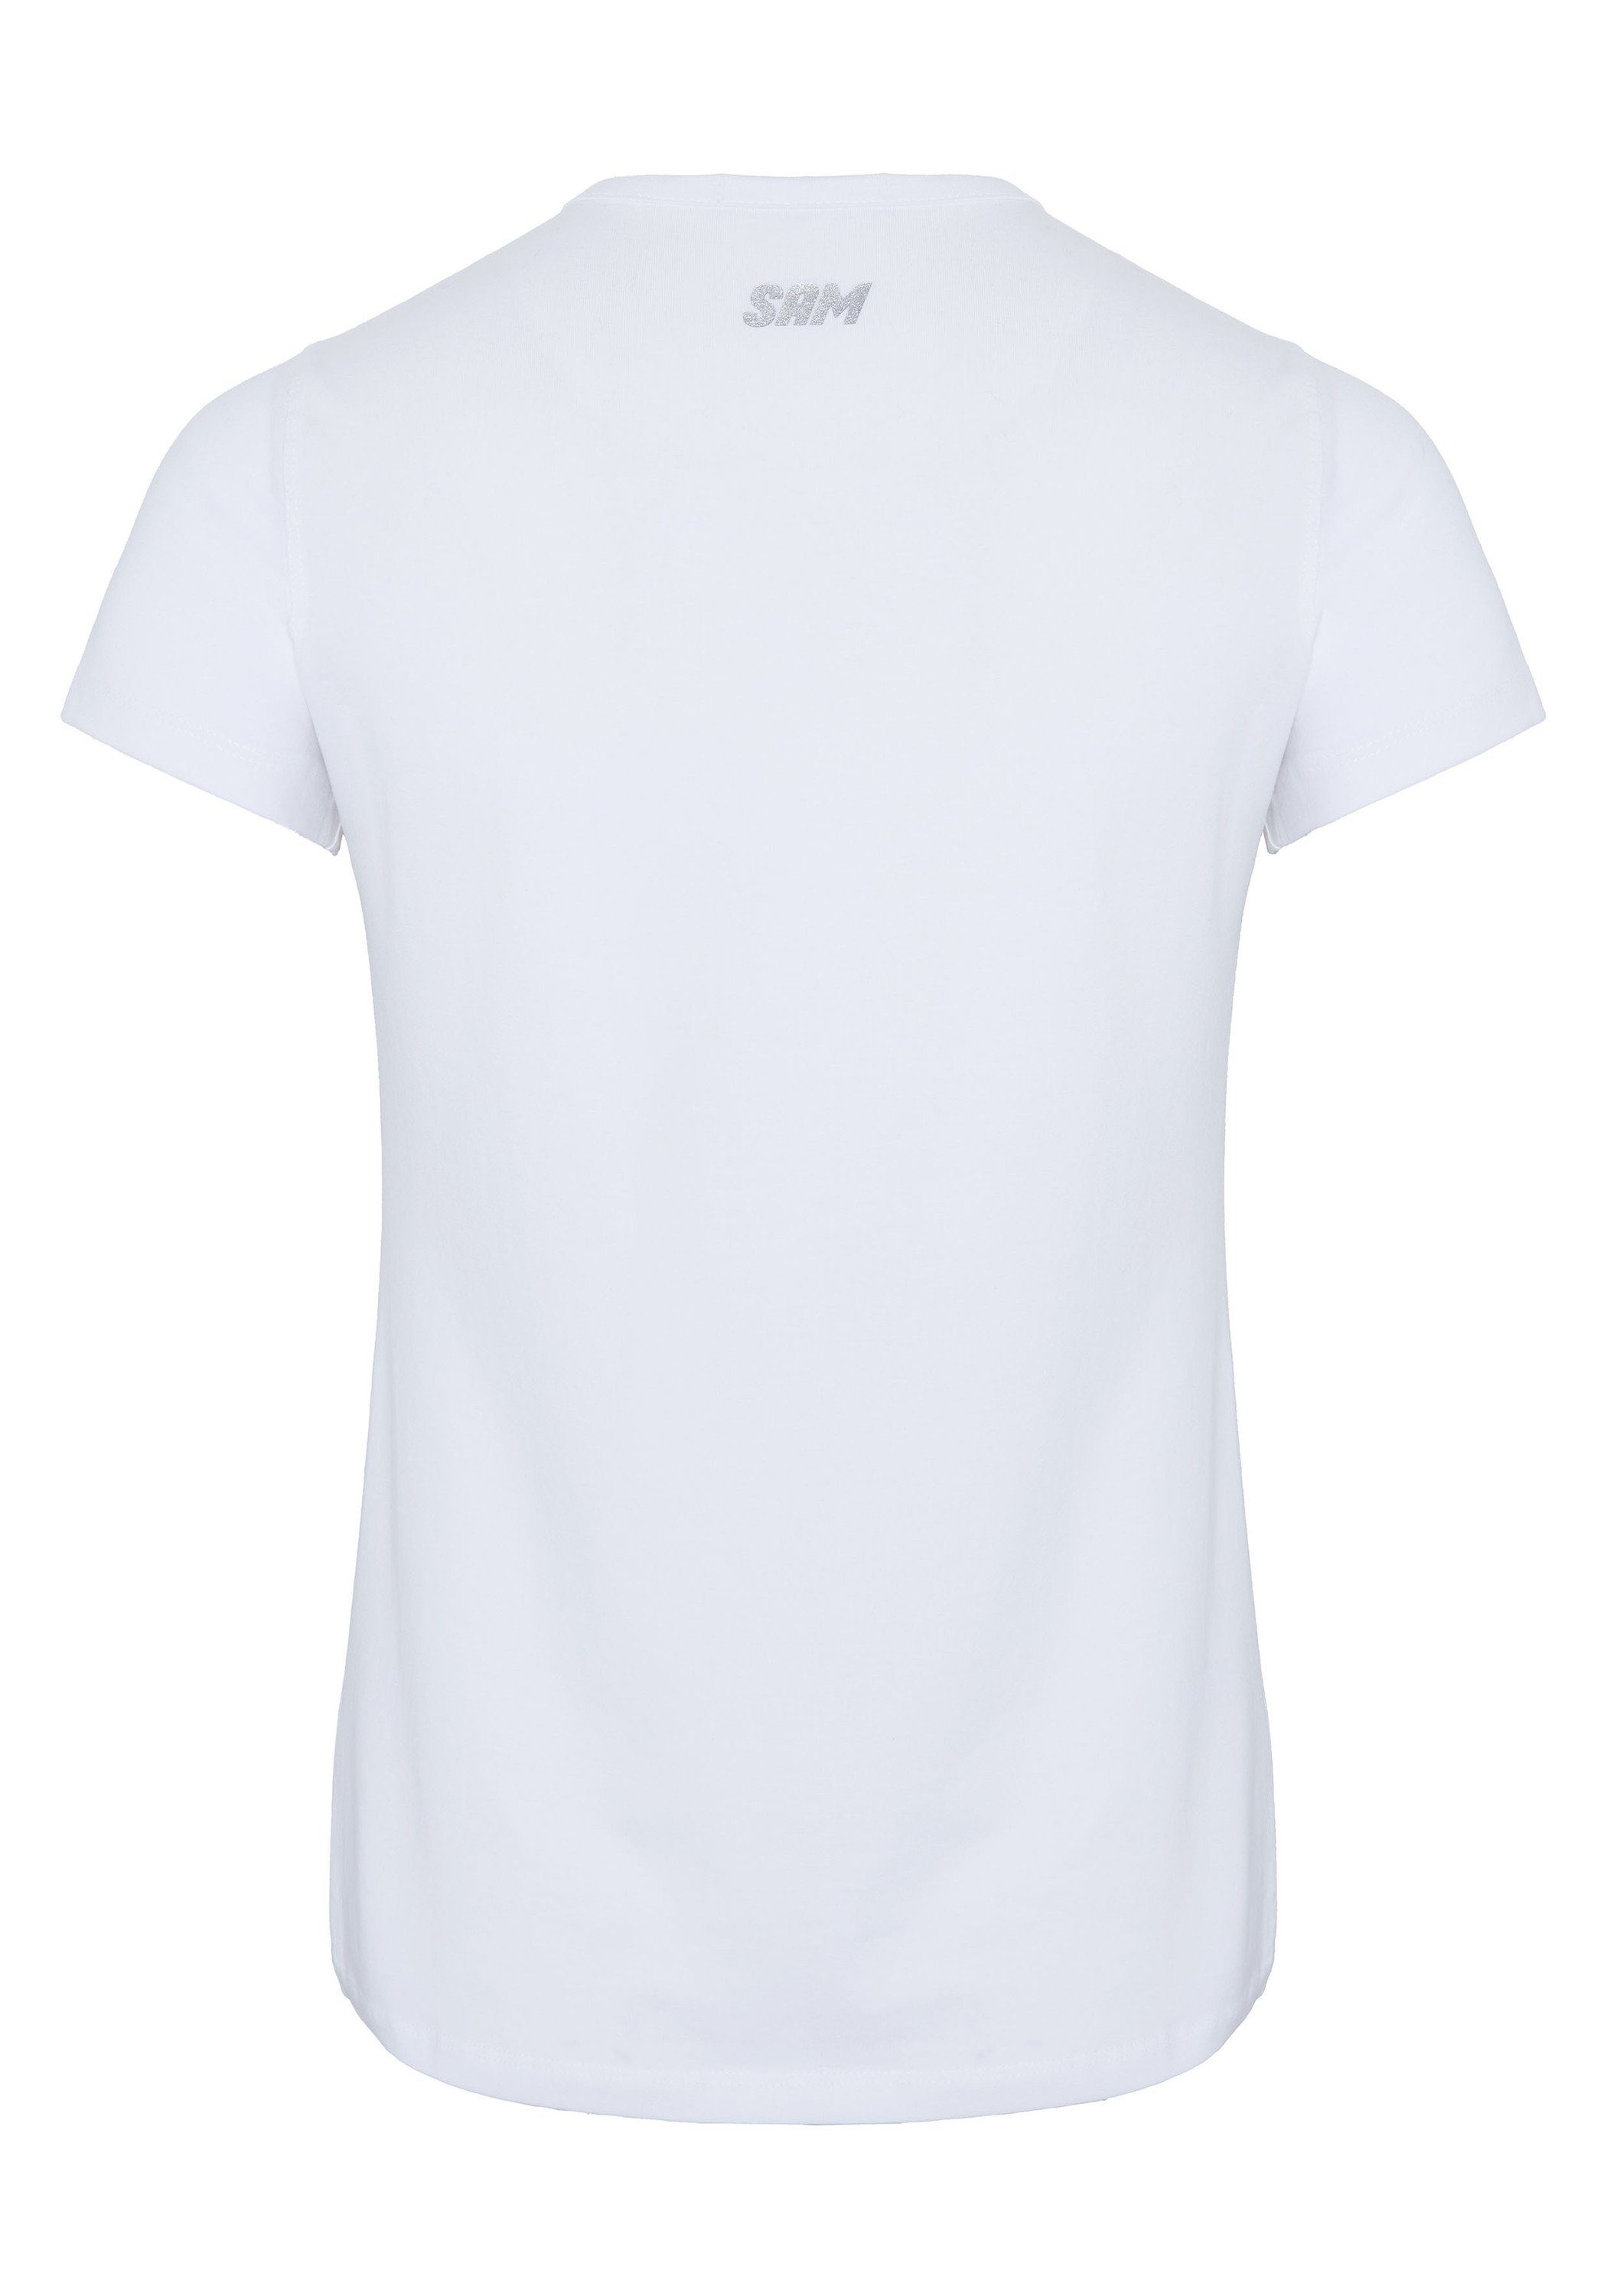 Print-Shirt V-Ausschnitt mit 11-0601 Bright White Uncle glitzerndem Sam